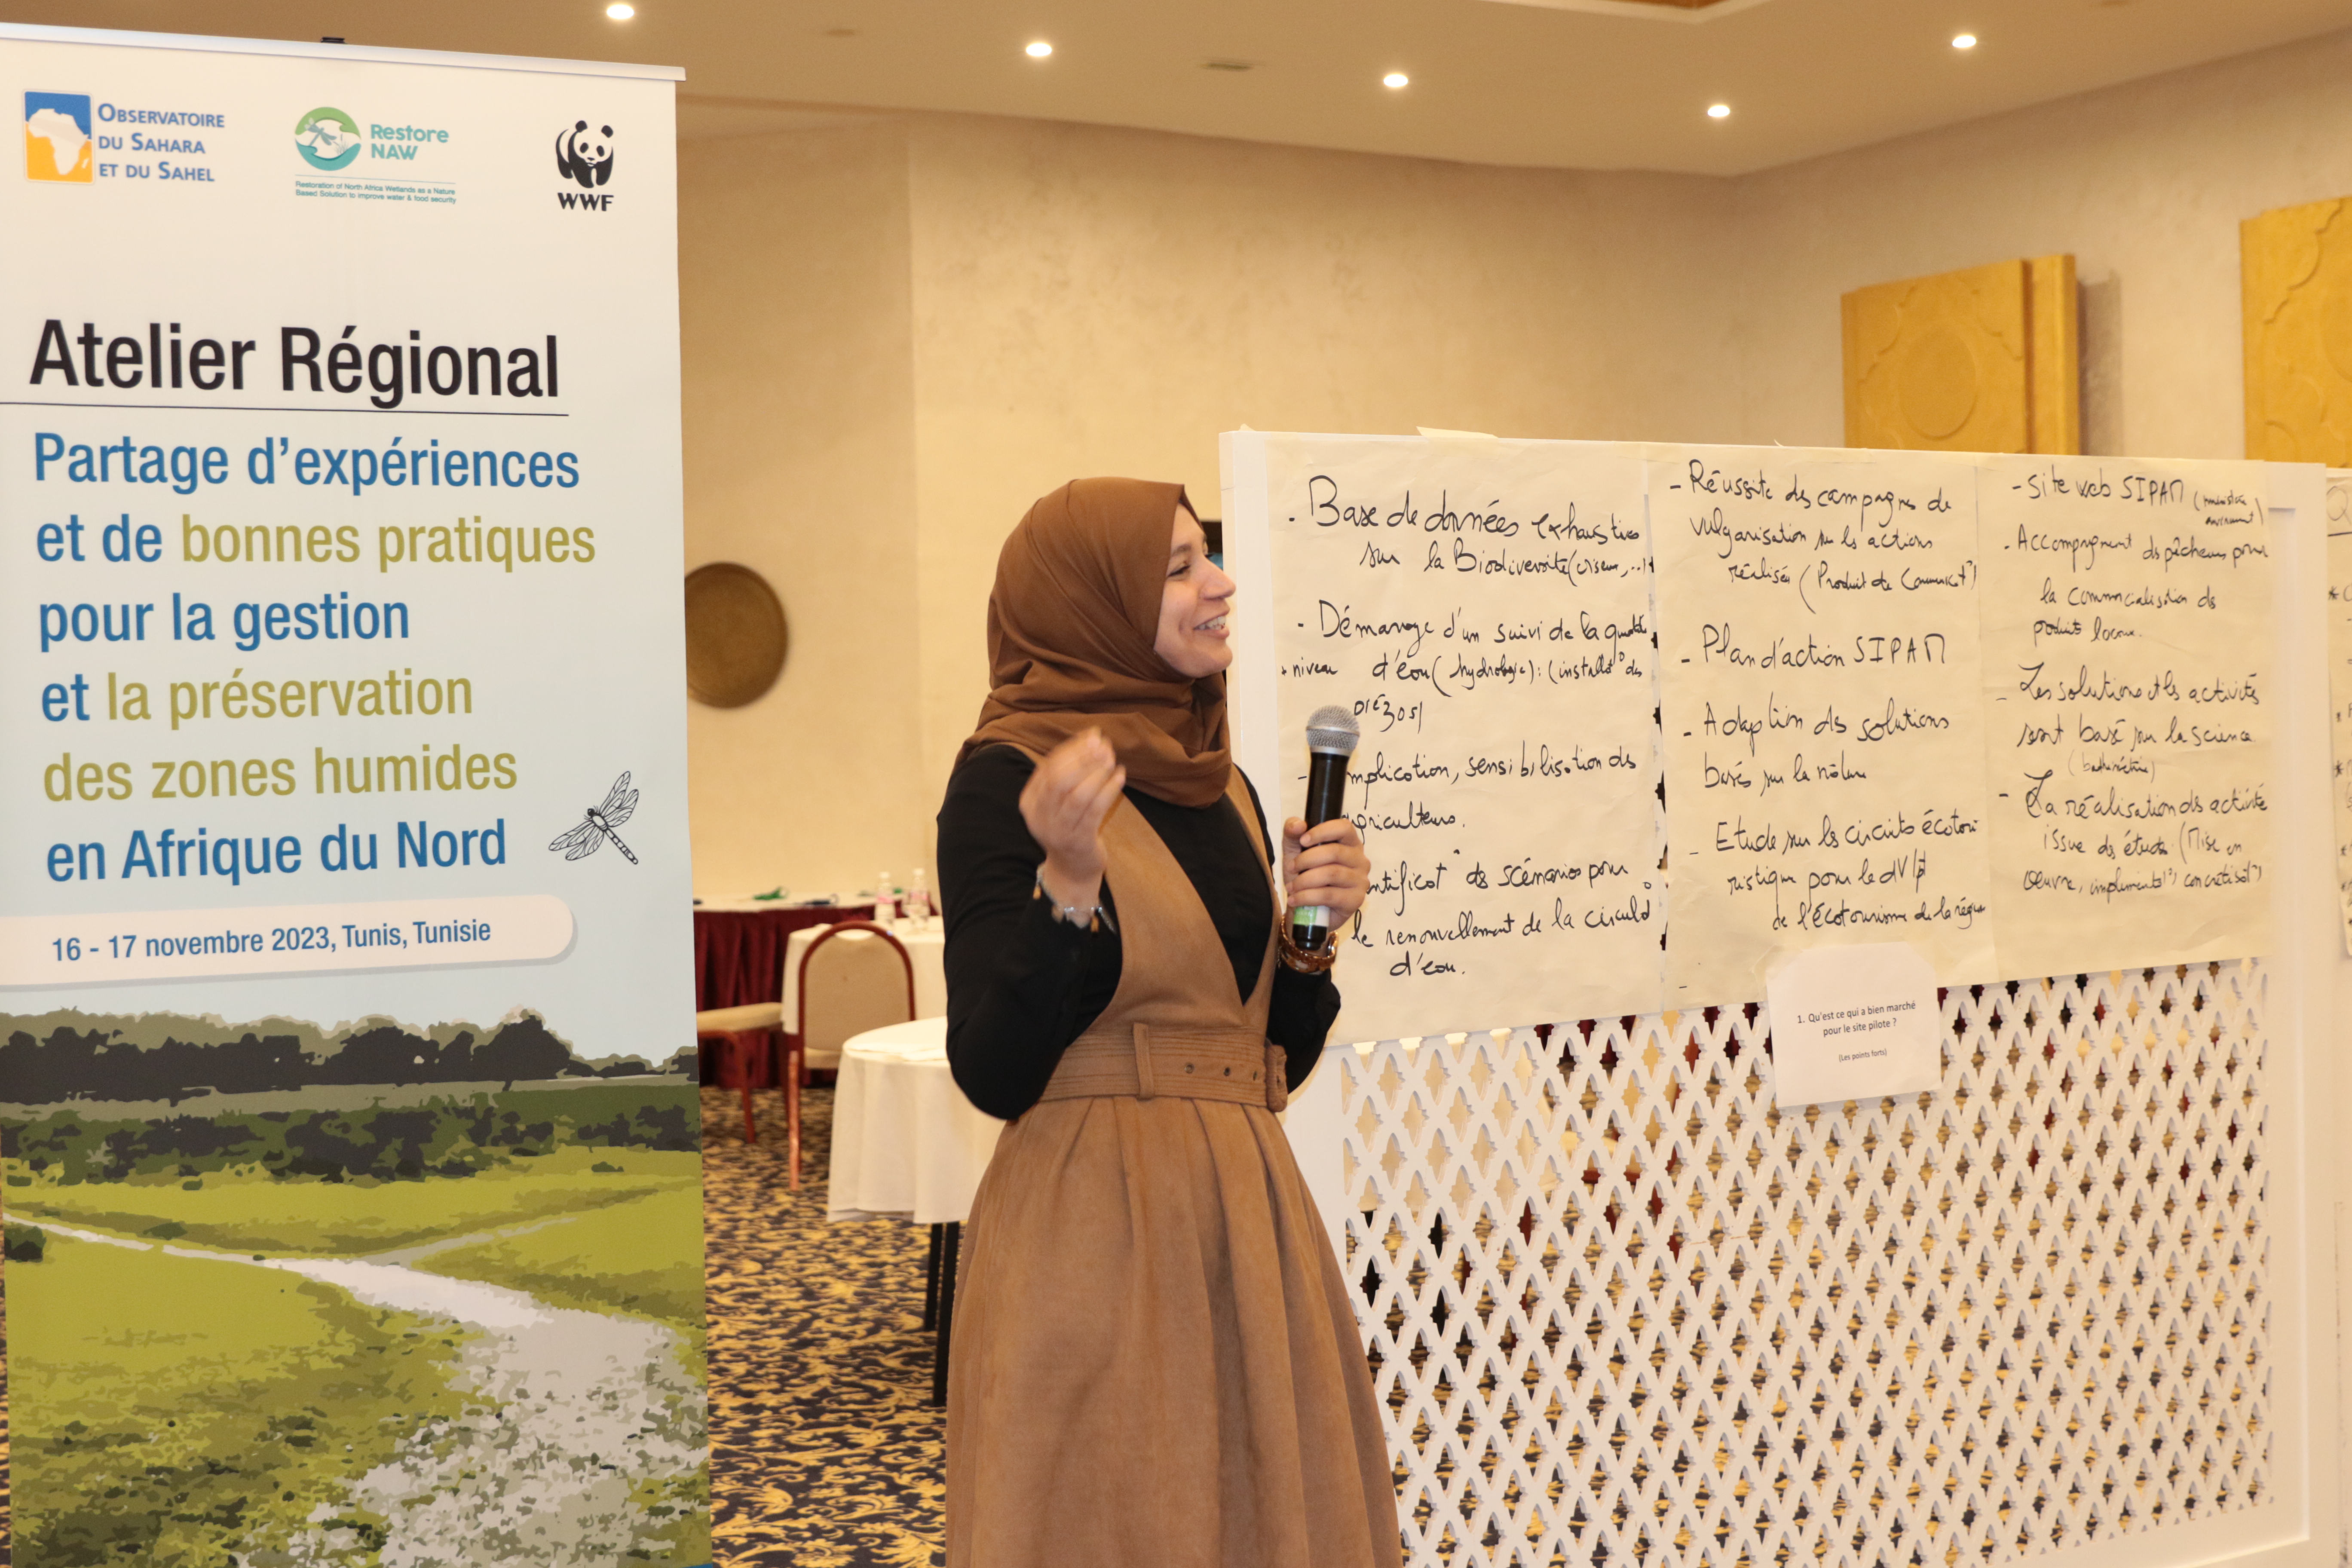 Restore Naw: Plaidoyer en faveur de la Restauration des Zones Humides en Afrique du Nord